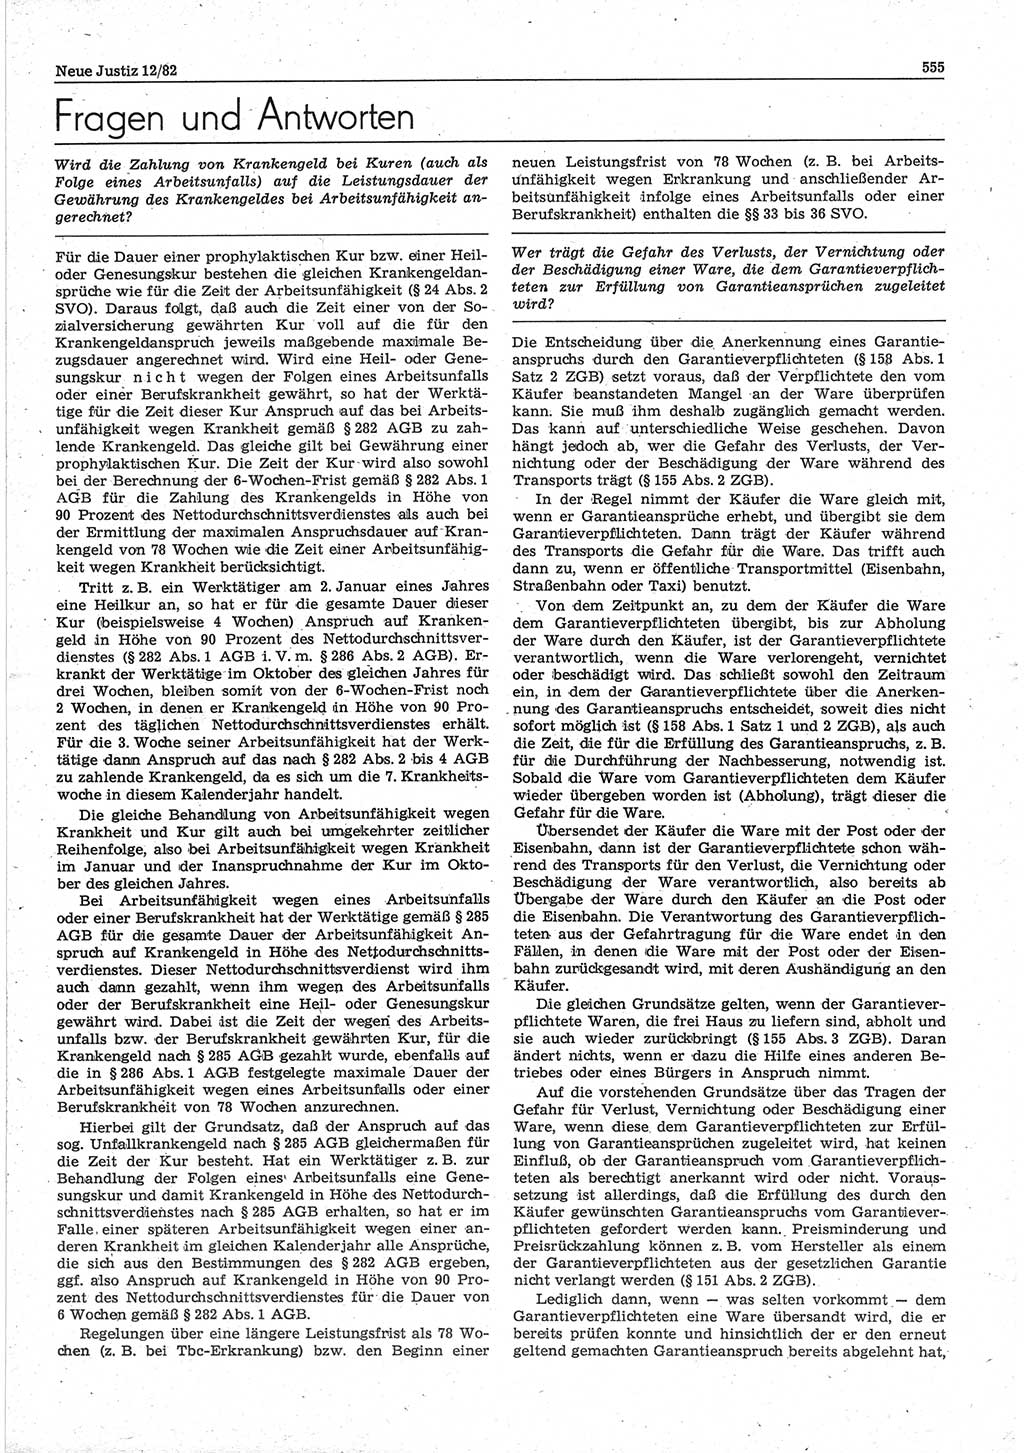 Neue Justiz (NJ), Zeitschrift für sozialistisches Recht und Gesetzlichkeit [Deutsche Demokratische Republik (DDR)], 36. Jahrgang 1982, Seite 555 (NJ DDR 1982, S. 555)